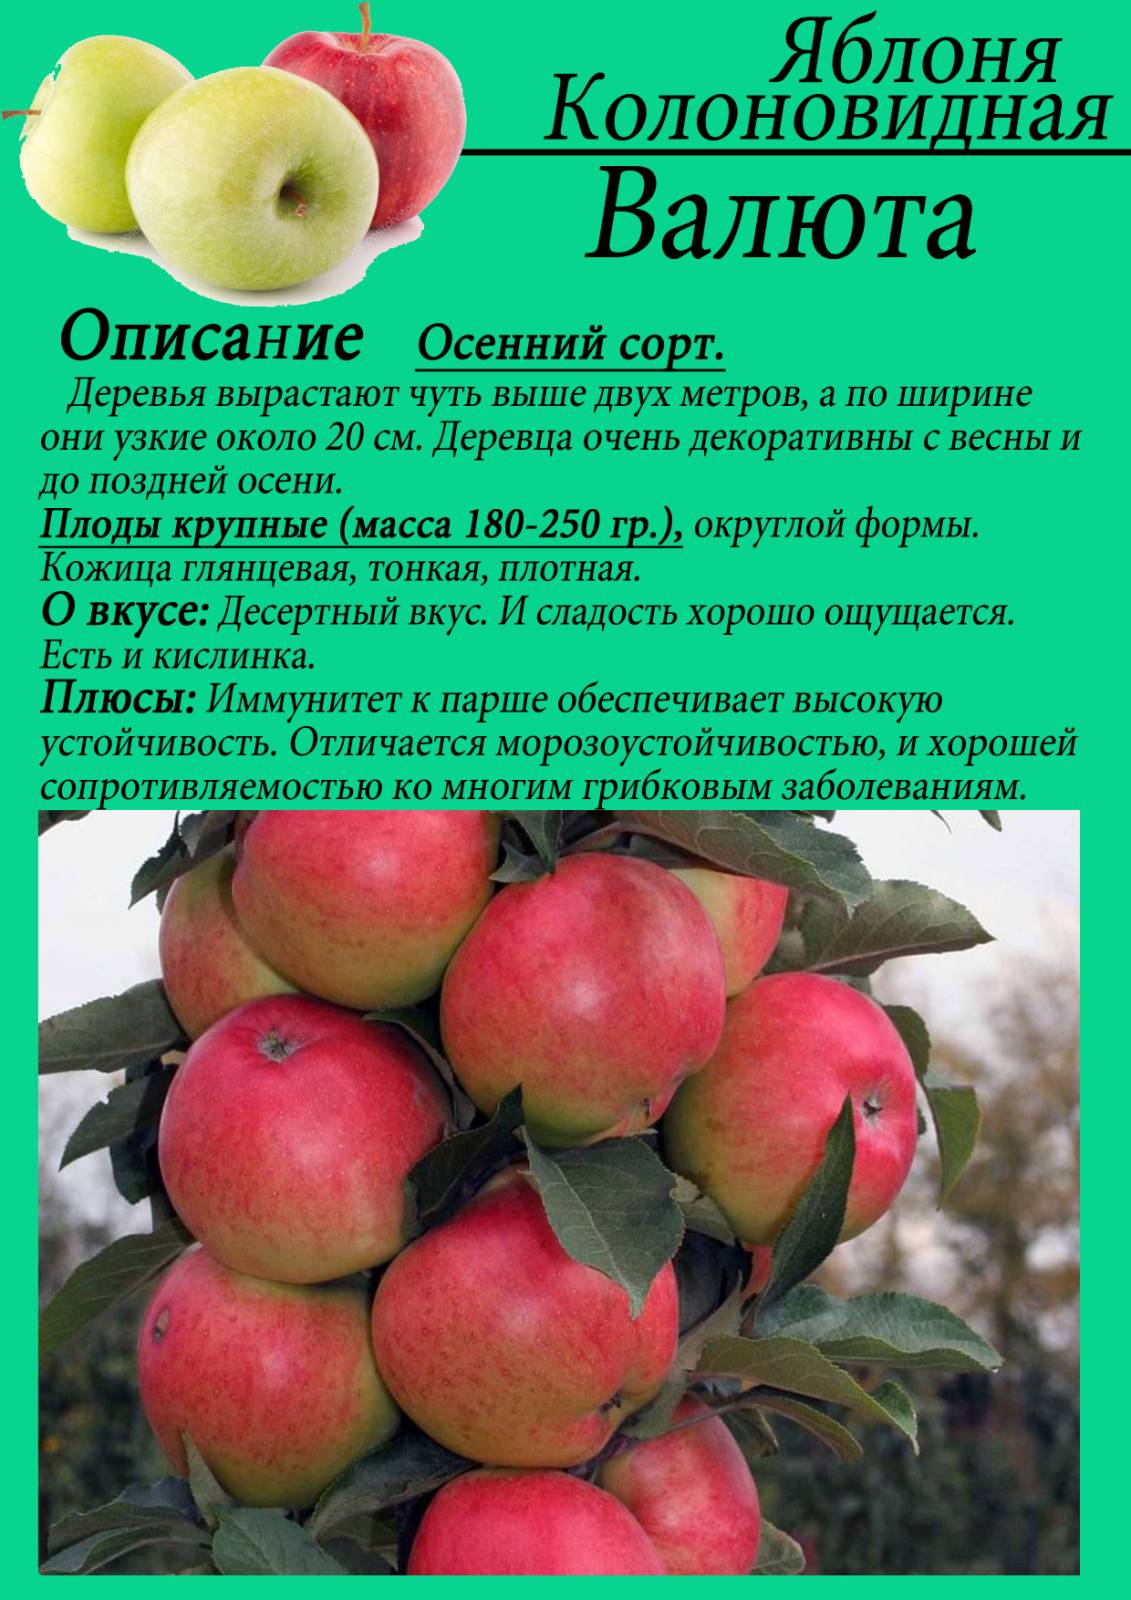 Описание и характеристики яблони сорта Ветеран, тонкости выращивания